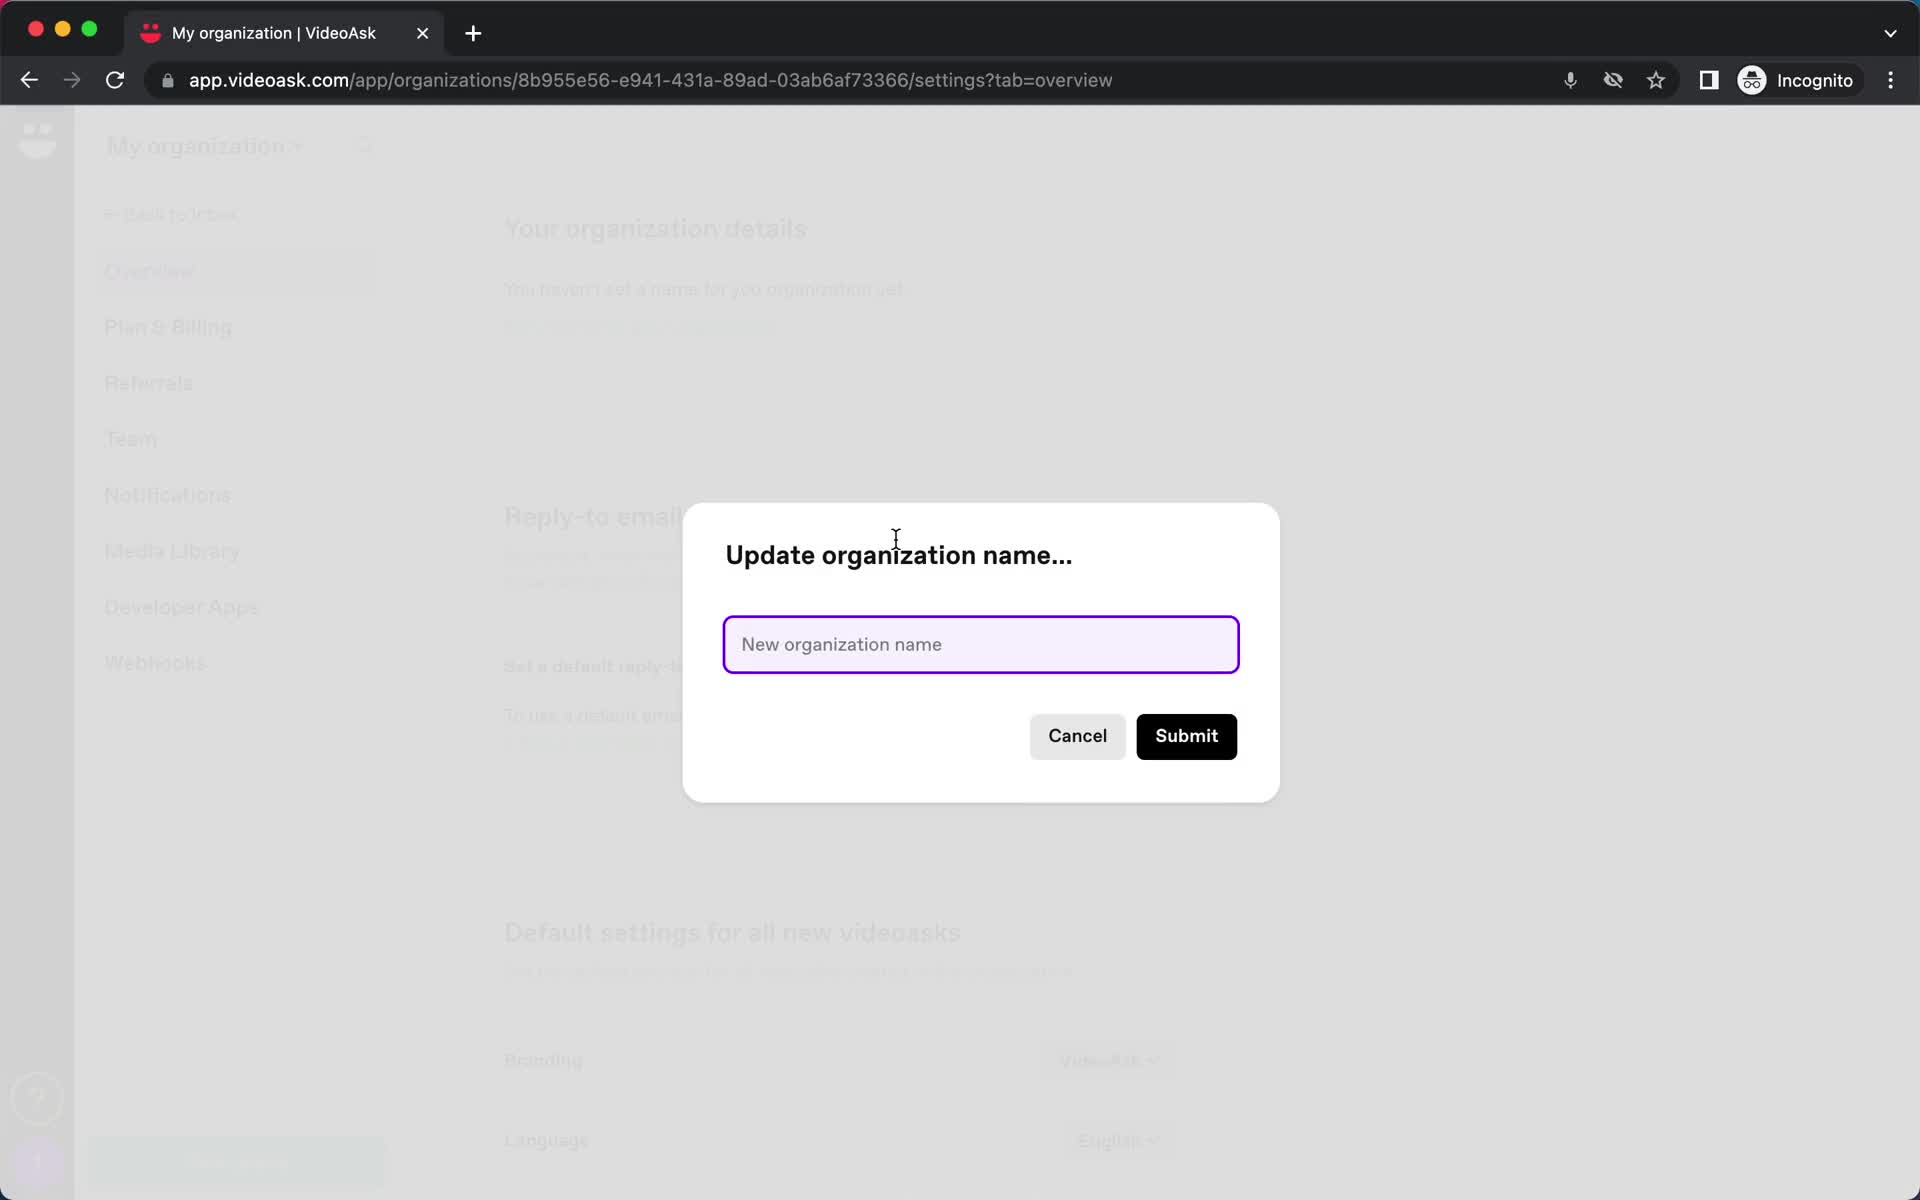 Screenshot of Enter name on General browsing on VideoAsk user flow